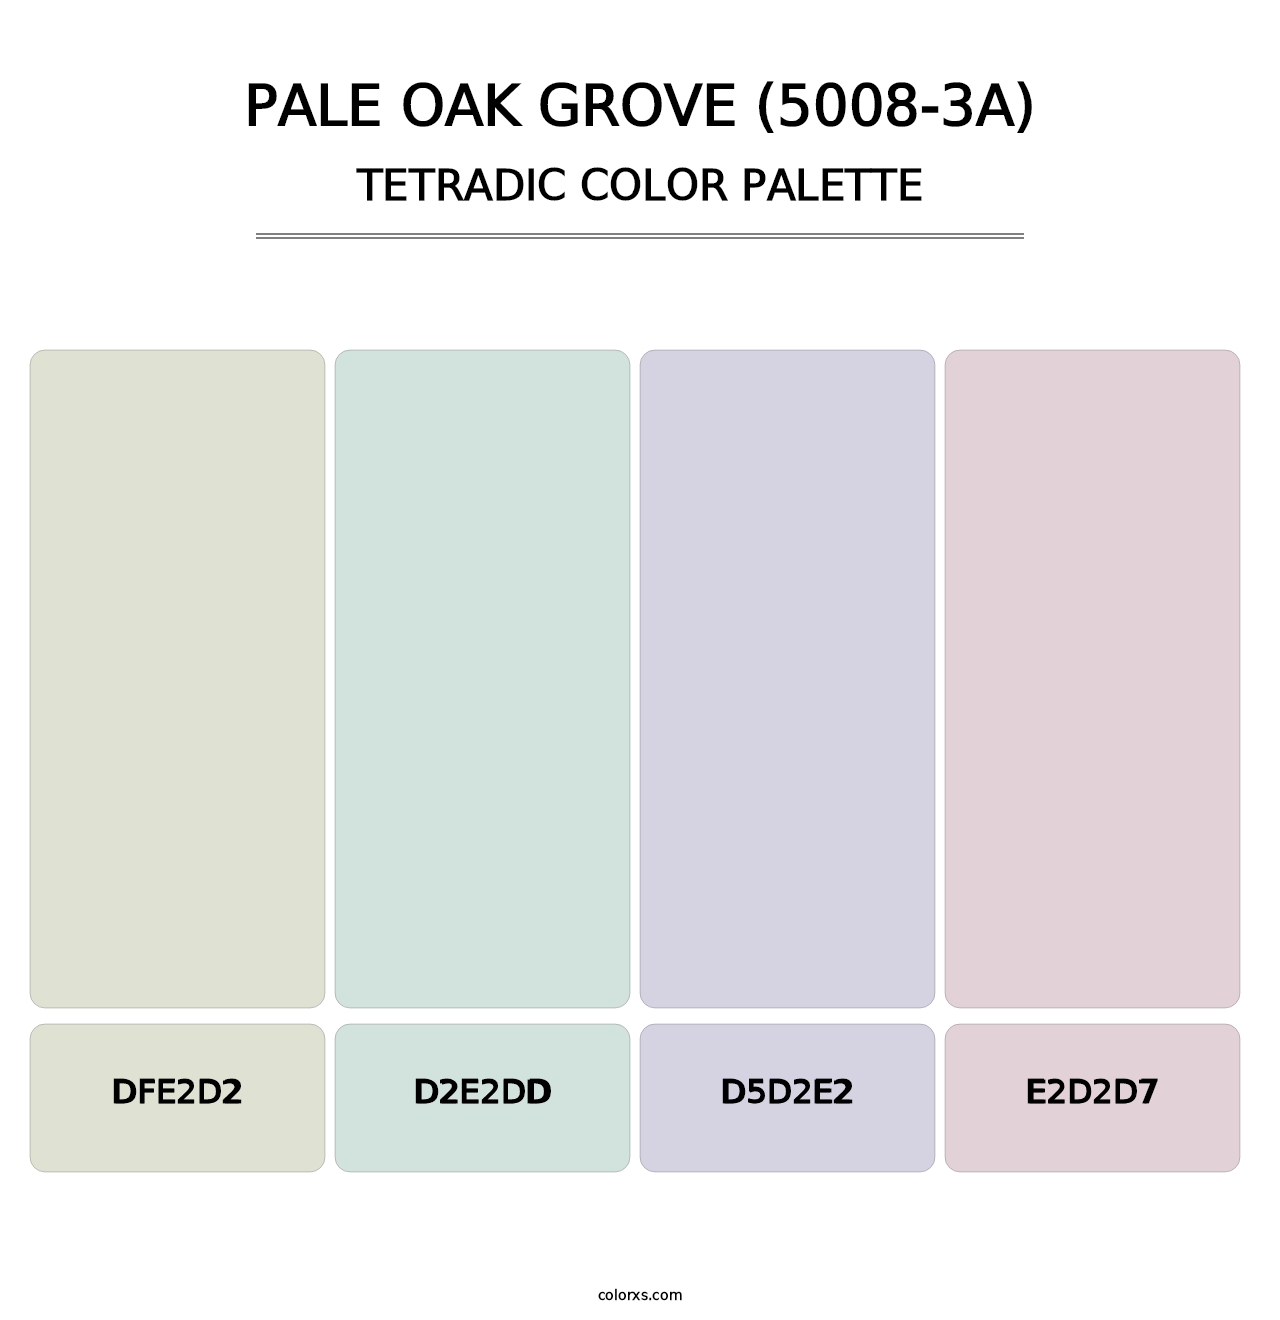 Pale Oak Grove (5008-3A) - Tetradic Color Palette